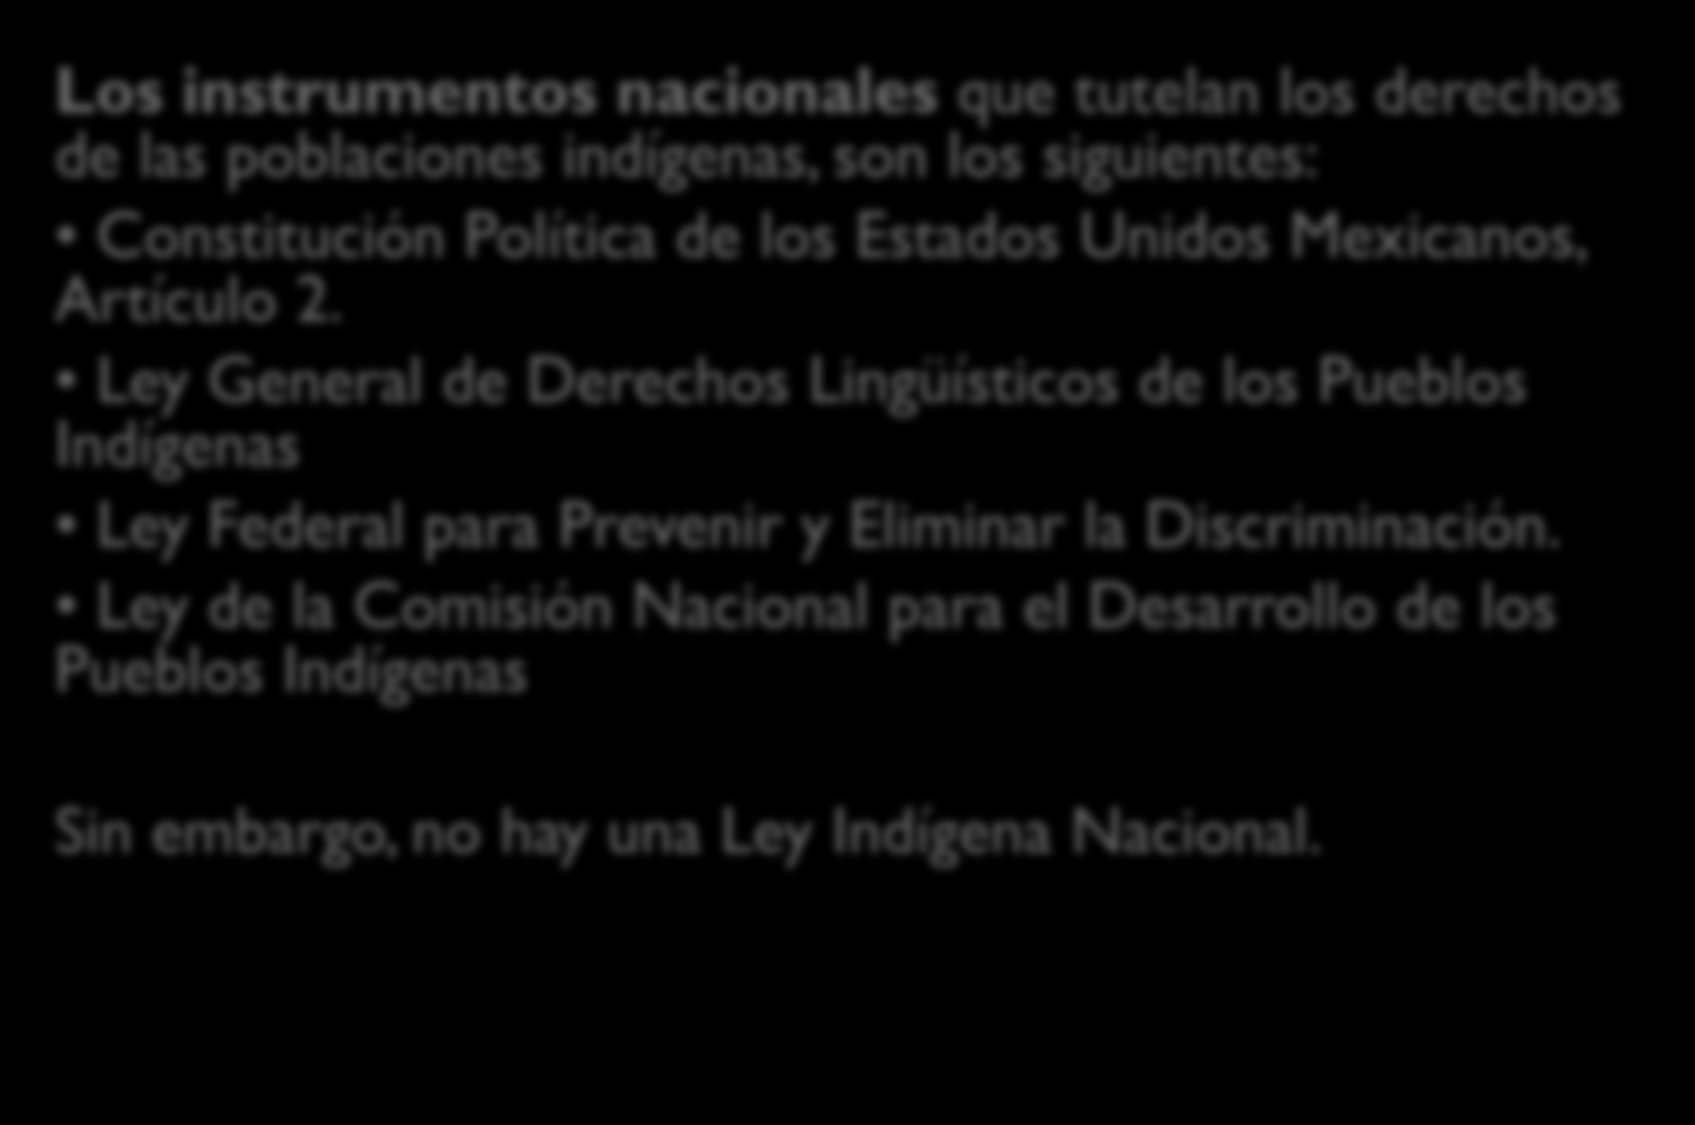 Marco Jurídico nacional de protección a los derechos de la población indígena en la Ciudad México Los instrumentos nacionales que tutelan los derechos de las poblaciones indígenas, son los